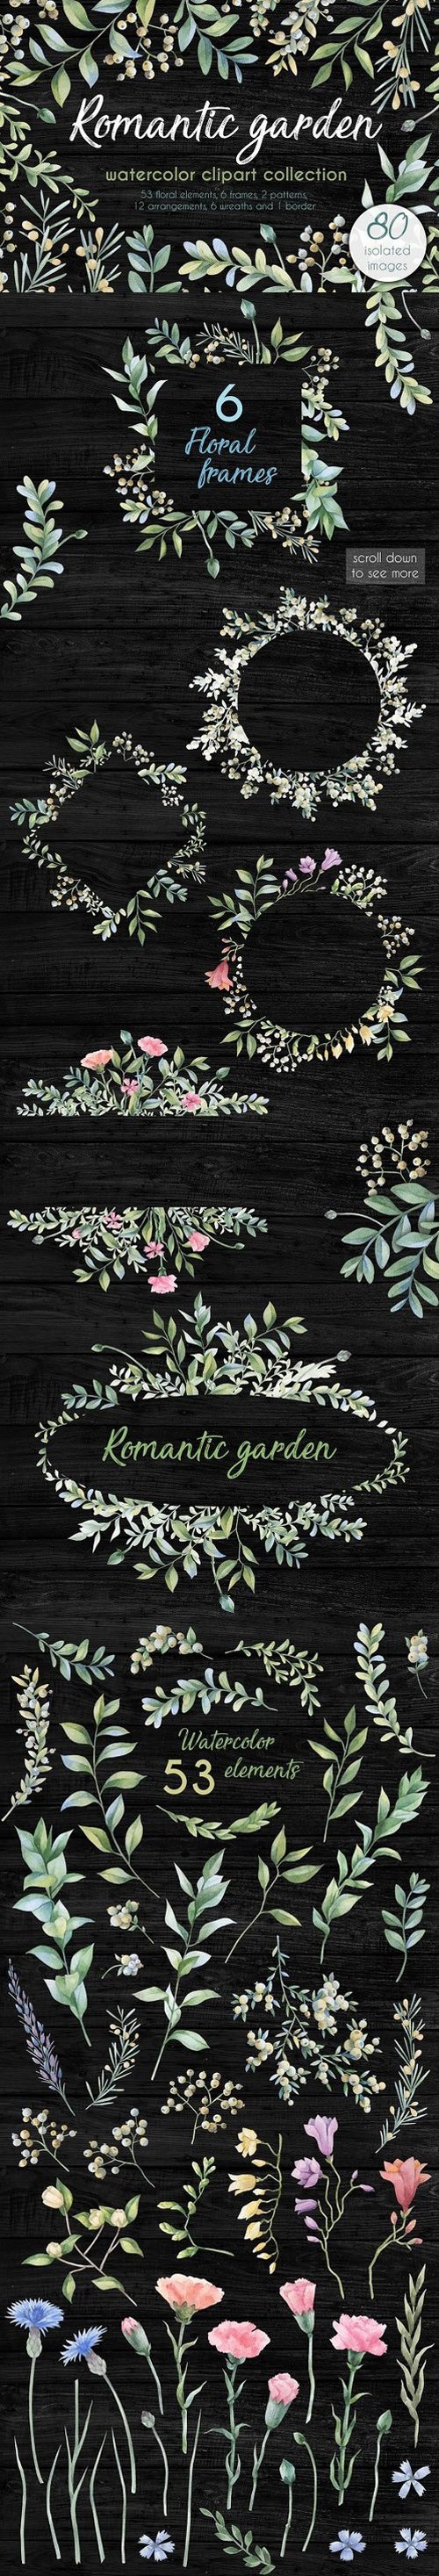 Romantic garden. Watercolor cliparts 1727183